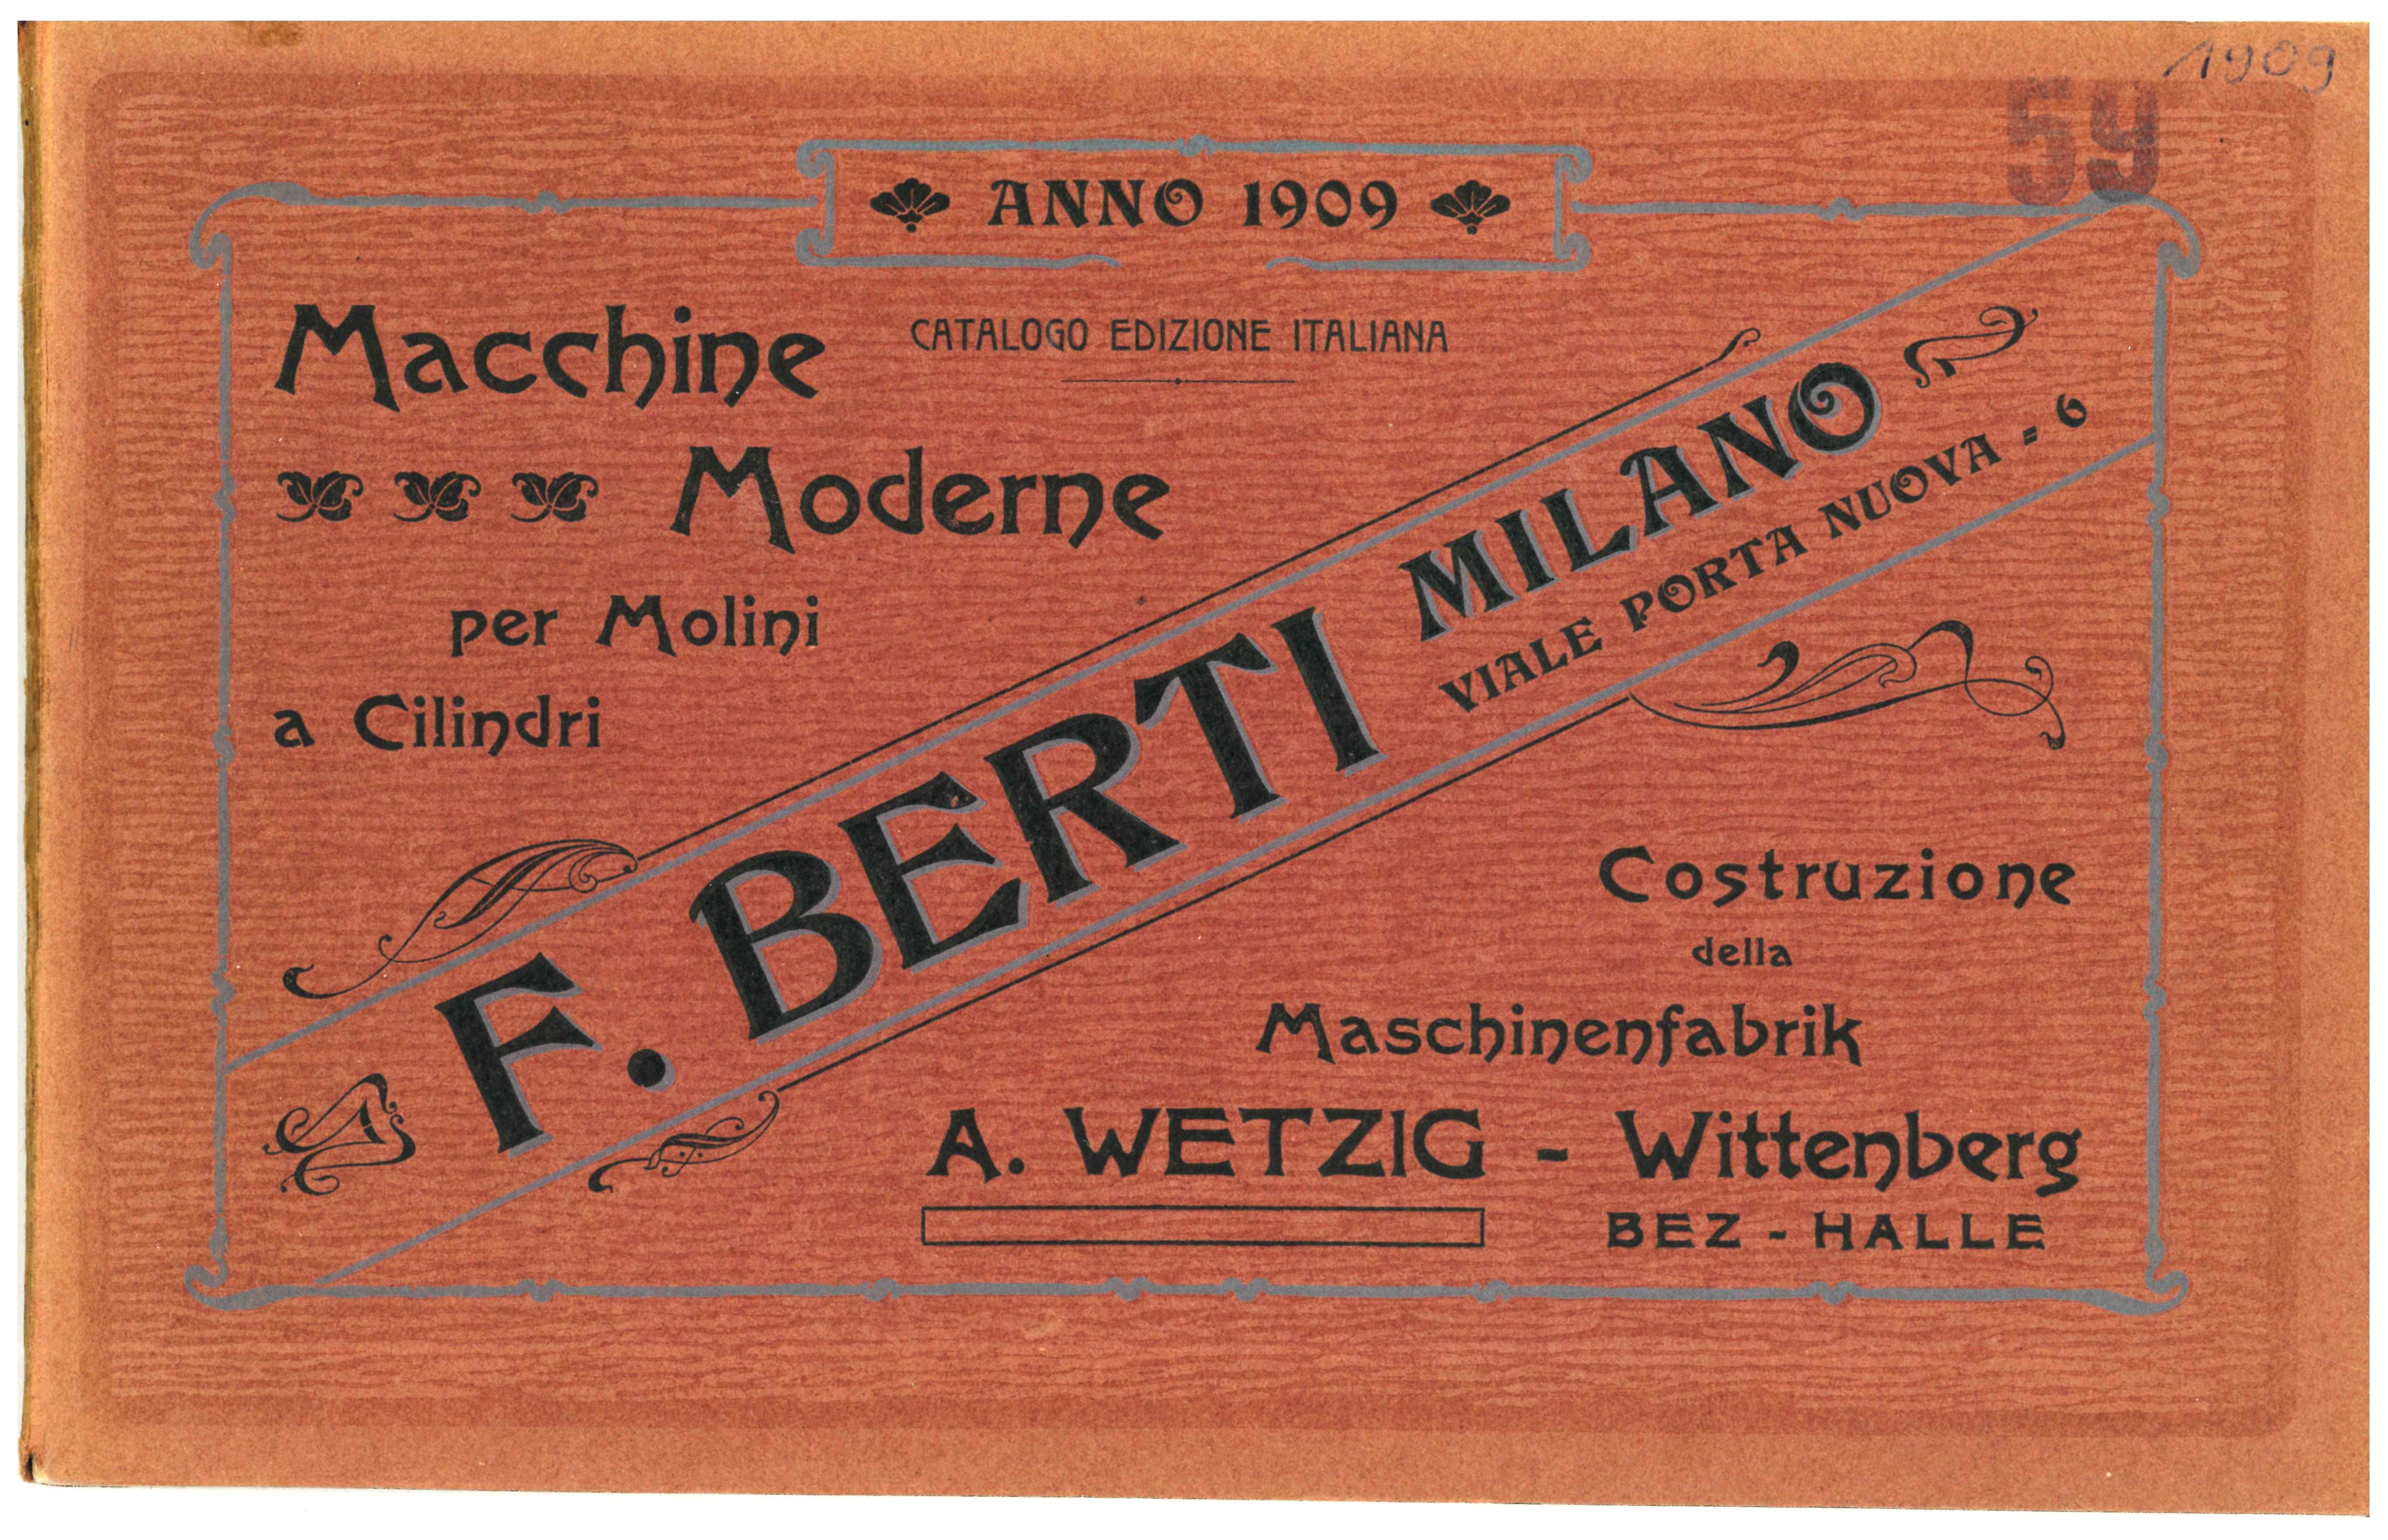 Catalogo Edizione Italiana: Macchine Moderne per Molini a Cilindr (Historische Mühle von Sanssouci CC BY-NC-SA)